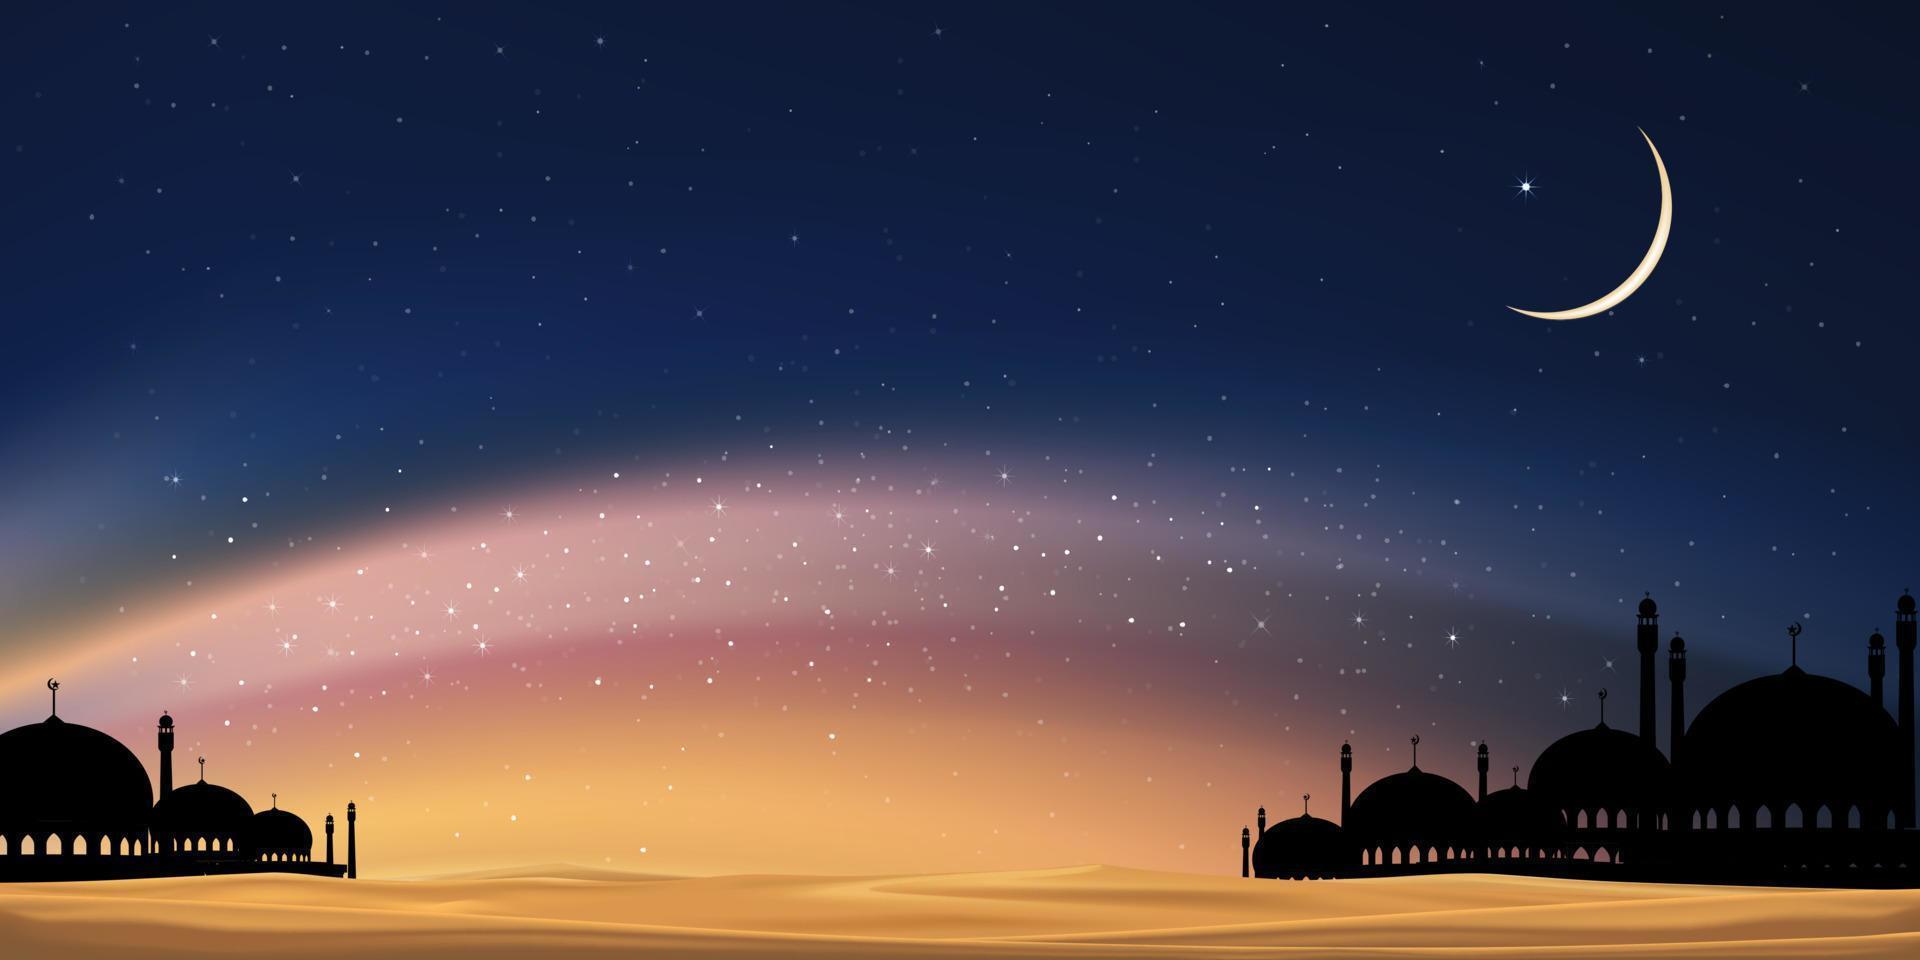 Ramadán tarjeta con mezquitas cúpula, media luna Luna en azul cielo fondo,vertical bandera Ramadán noche con crepúsculo oscuridad cielo para islámico religión, eid Alabama adha, eid mubarak, eid Alabama fitr, ramadán kareem vector